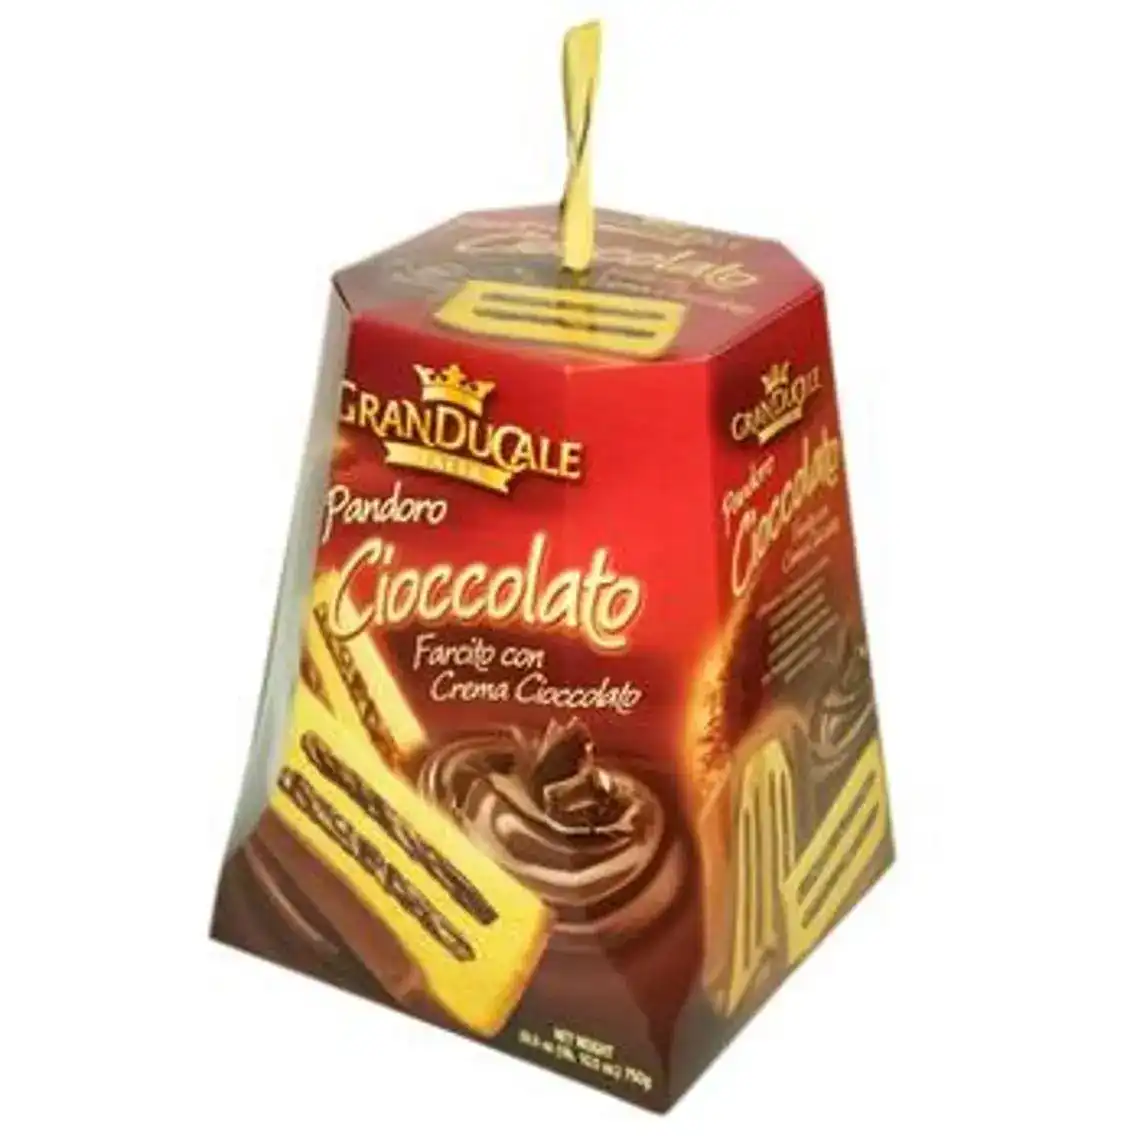 Кекс Пандоро з Шоколадним кремом Грандукале 750г